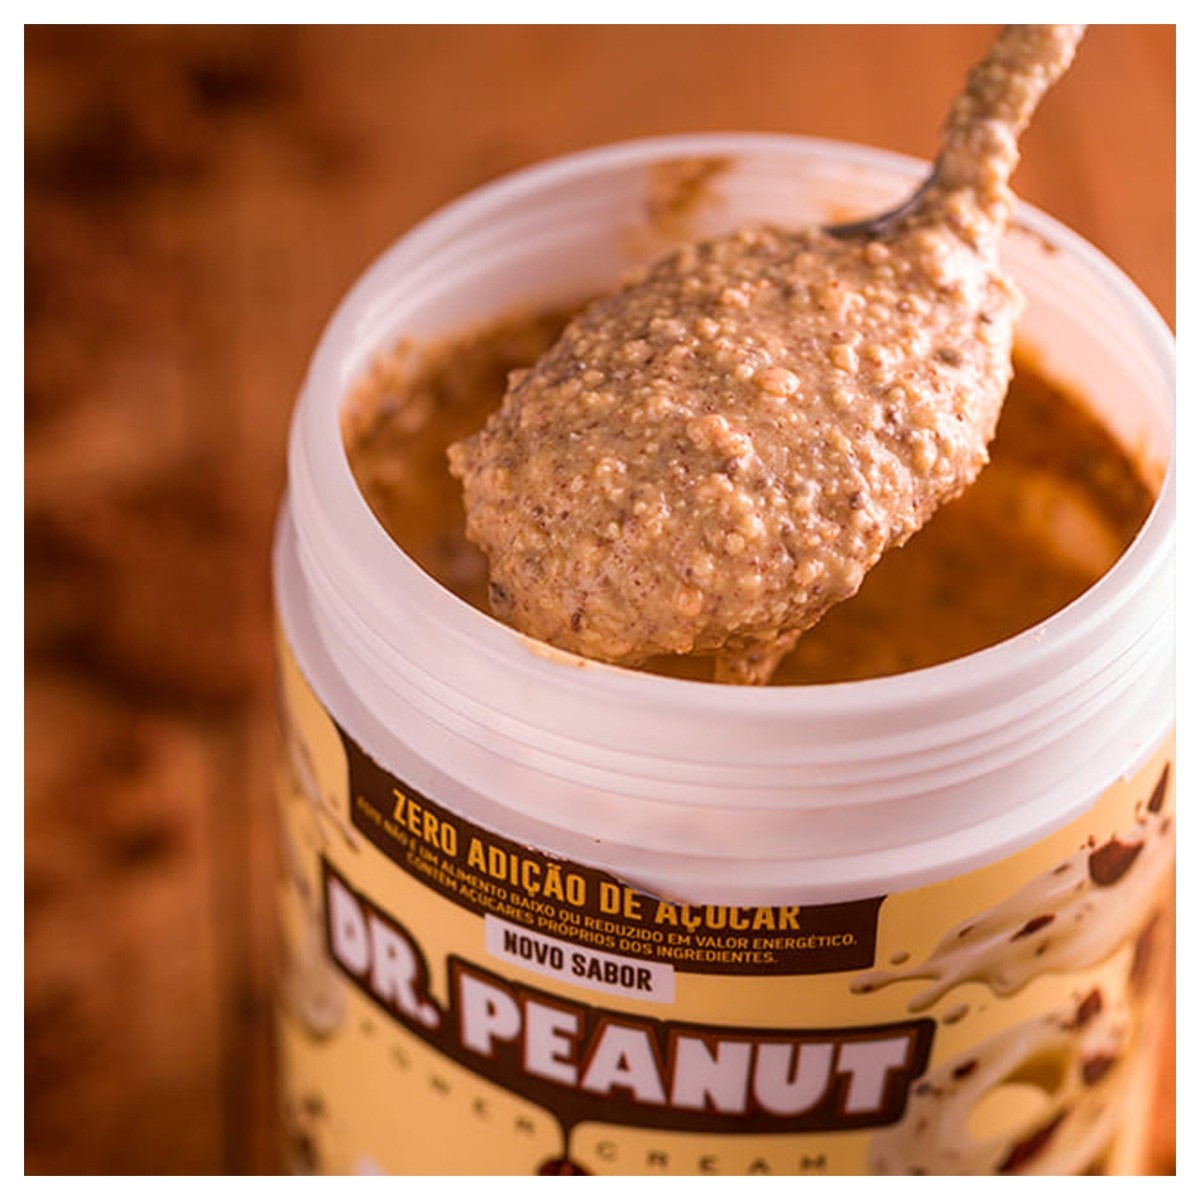 Kit C/2 Pasta de amendoim Dr Peanut Buenissimo 600g : :  Alimentos e Bebidas